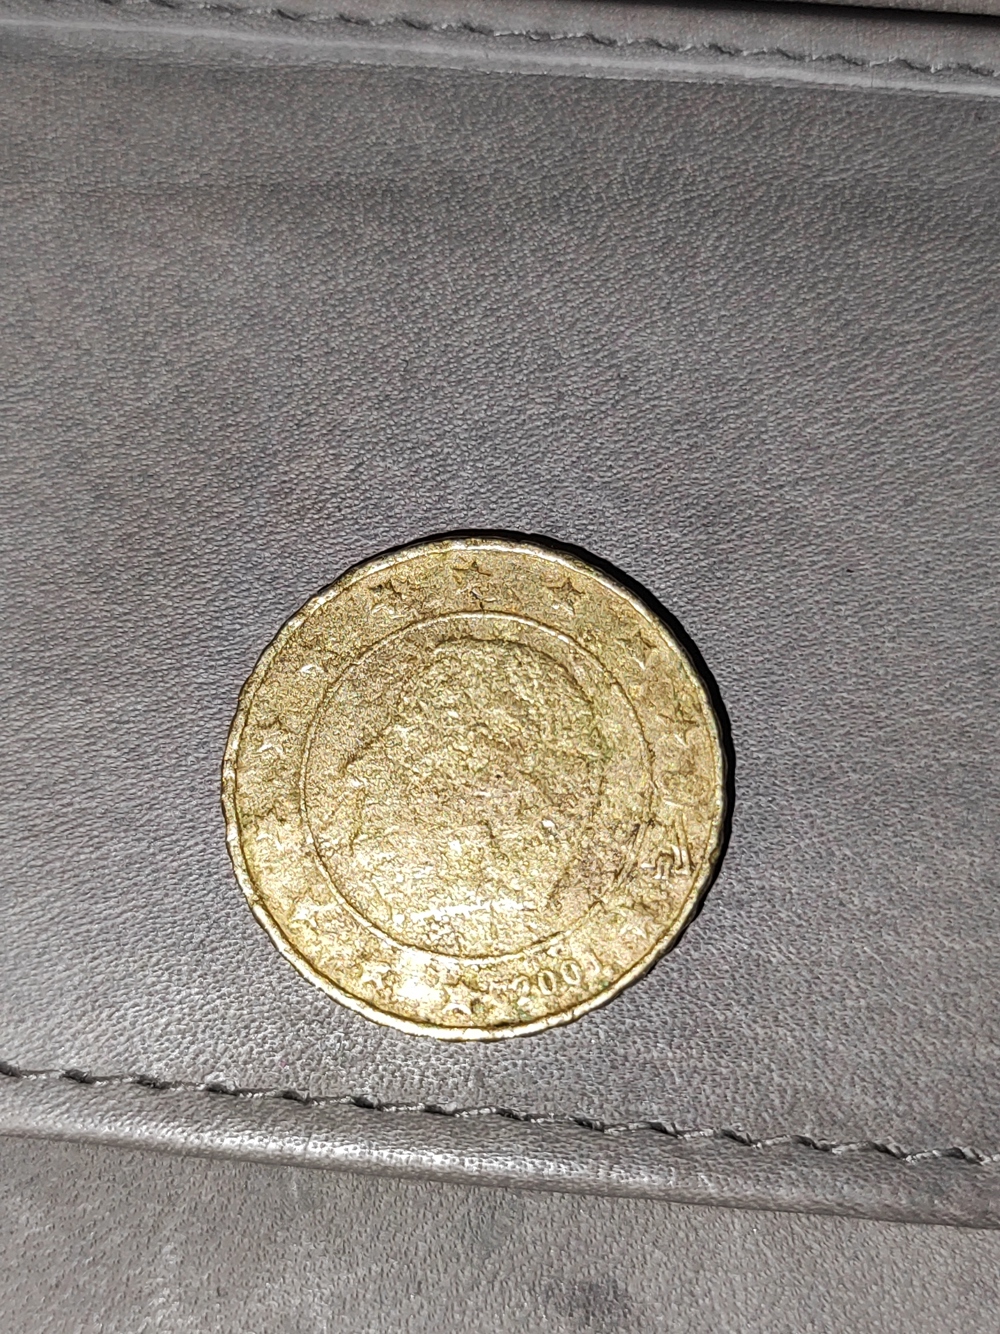 Belgische 10 Cent Münze aus 2001 